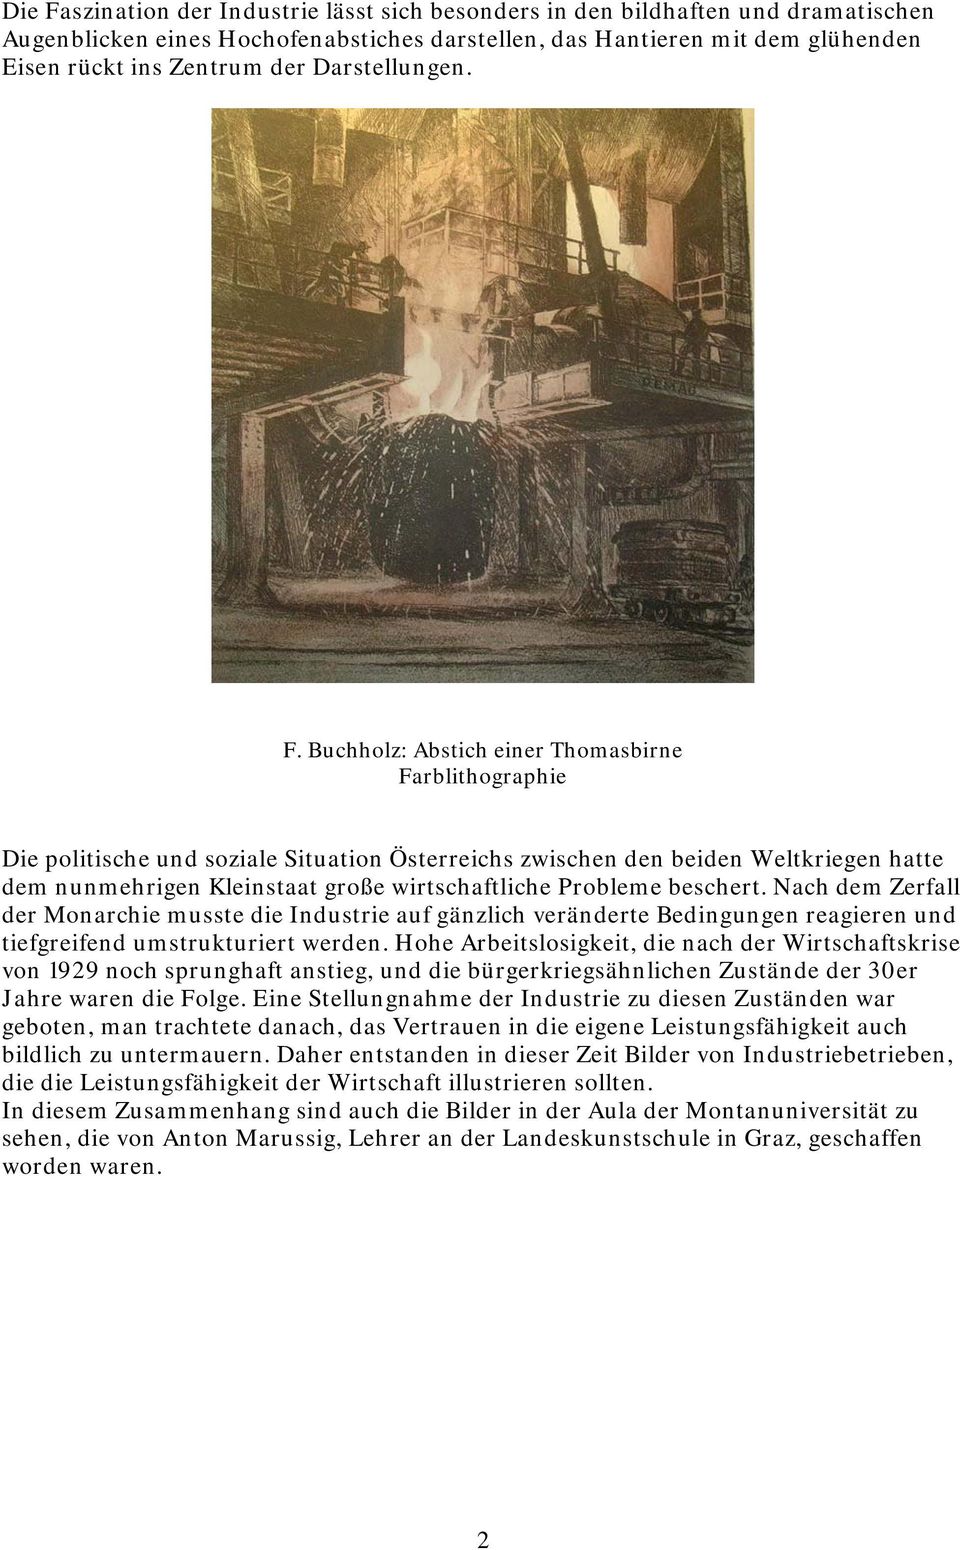 Buchholz: Abstich einer Thomasbirne Farblithographie Die politische und soziale Situation Österreichs zwischen den beiden Weltkriegen hatte dem nunmehrigen Kleinstaat große wirtschaftliche Probleme